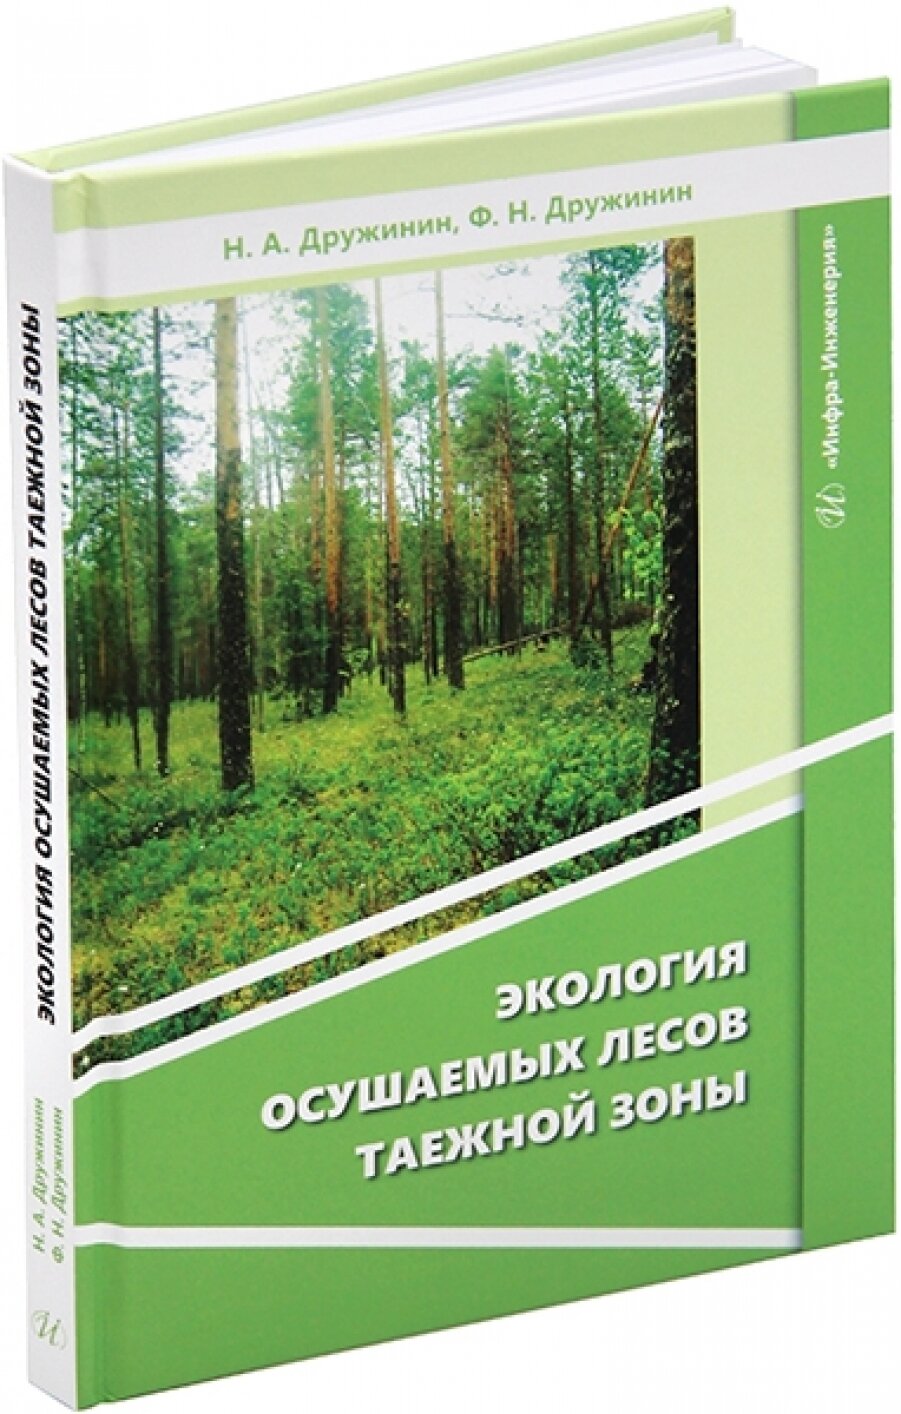 Экология осушаемых лесов таежной зоны. Монография - фото №3